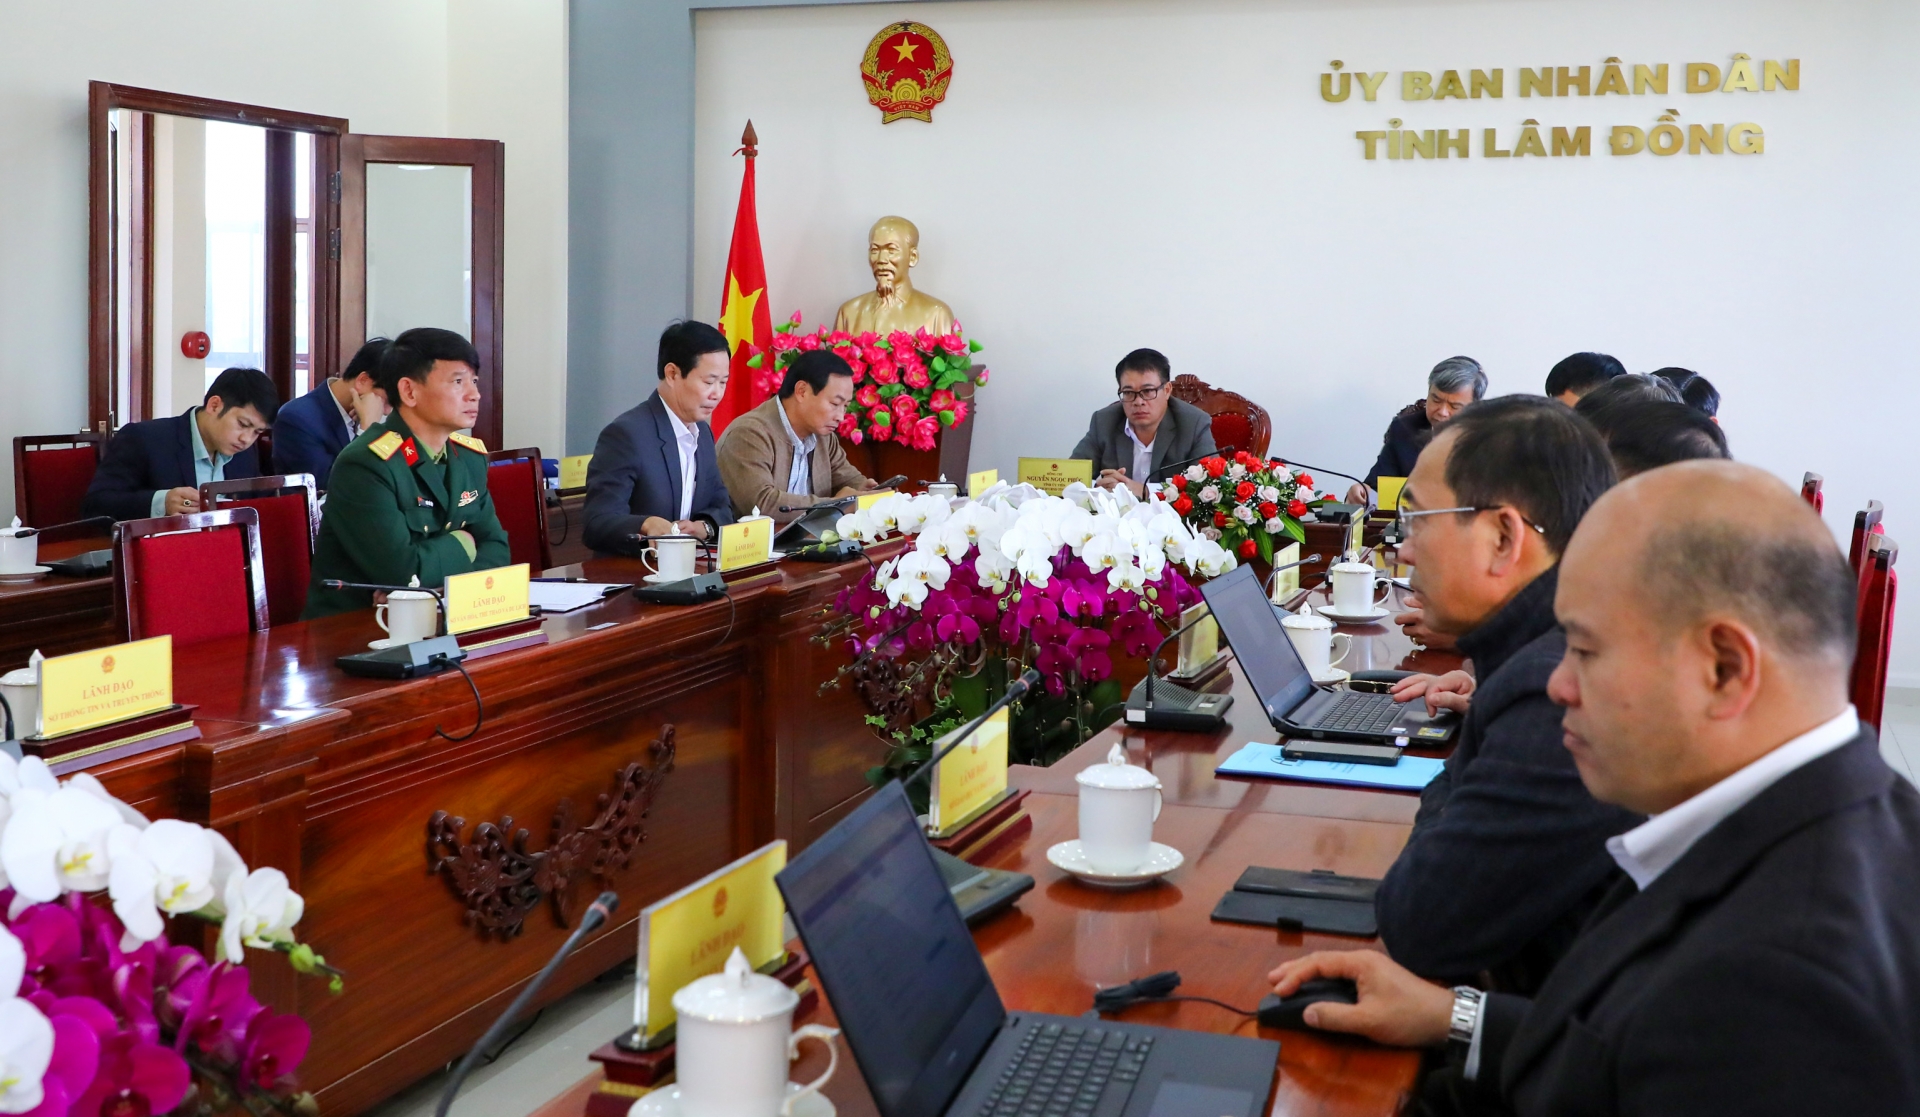 Quang cảnh hội nghị tại điểm cầu tỉnh Lâm Đồng